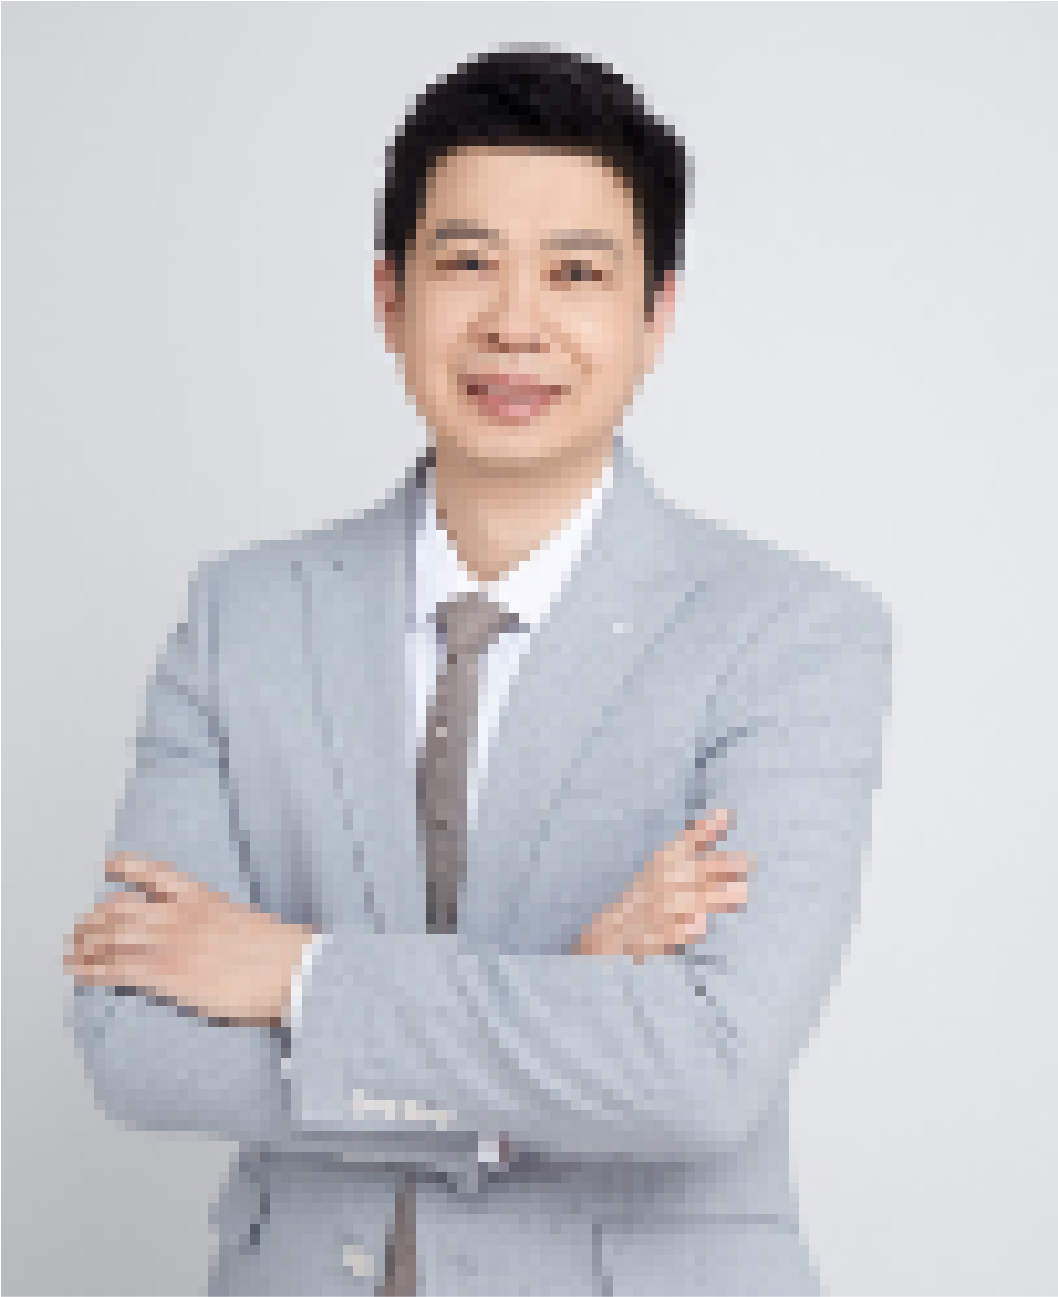 Professor Wang Lin